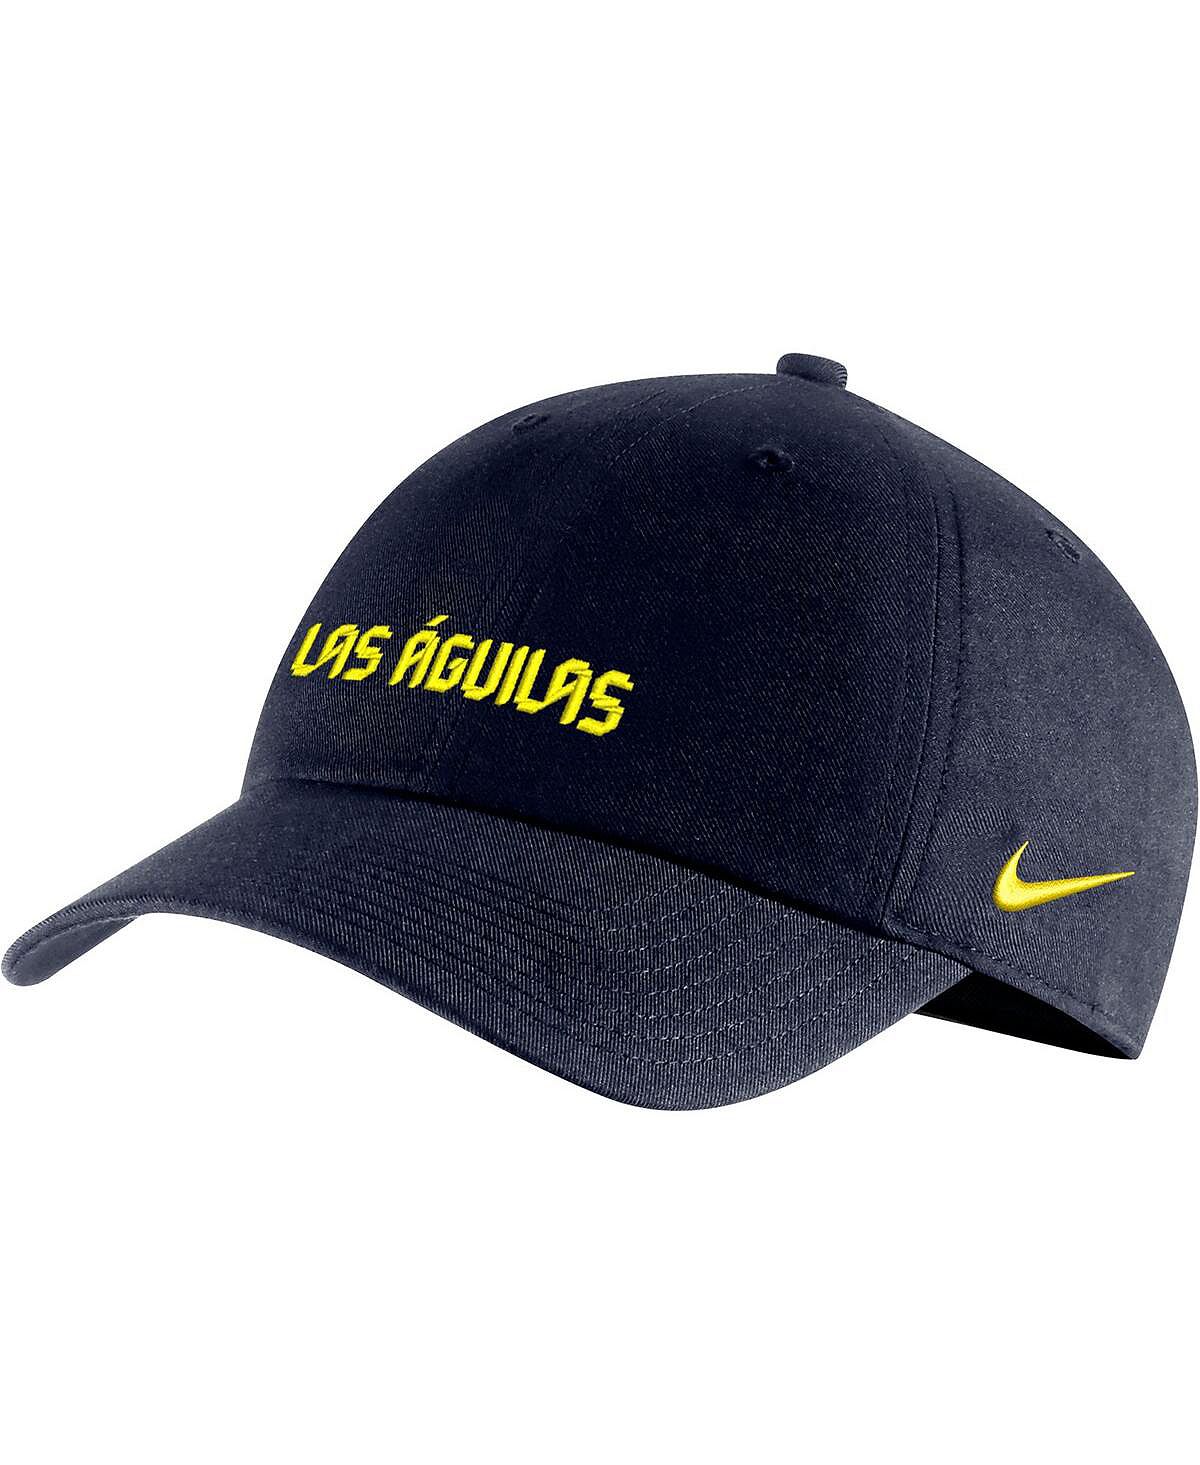 Мужская регулируемая шляпа темно-синего цвета Club America Campus Performance Nike